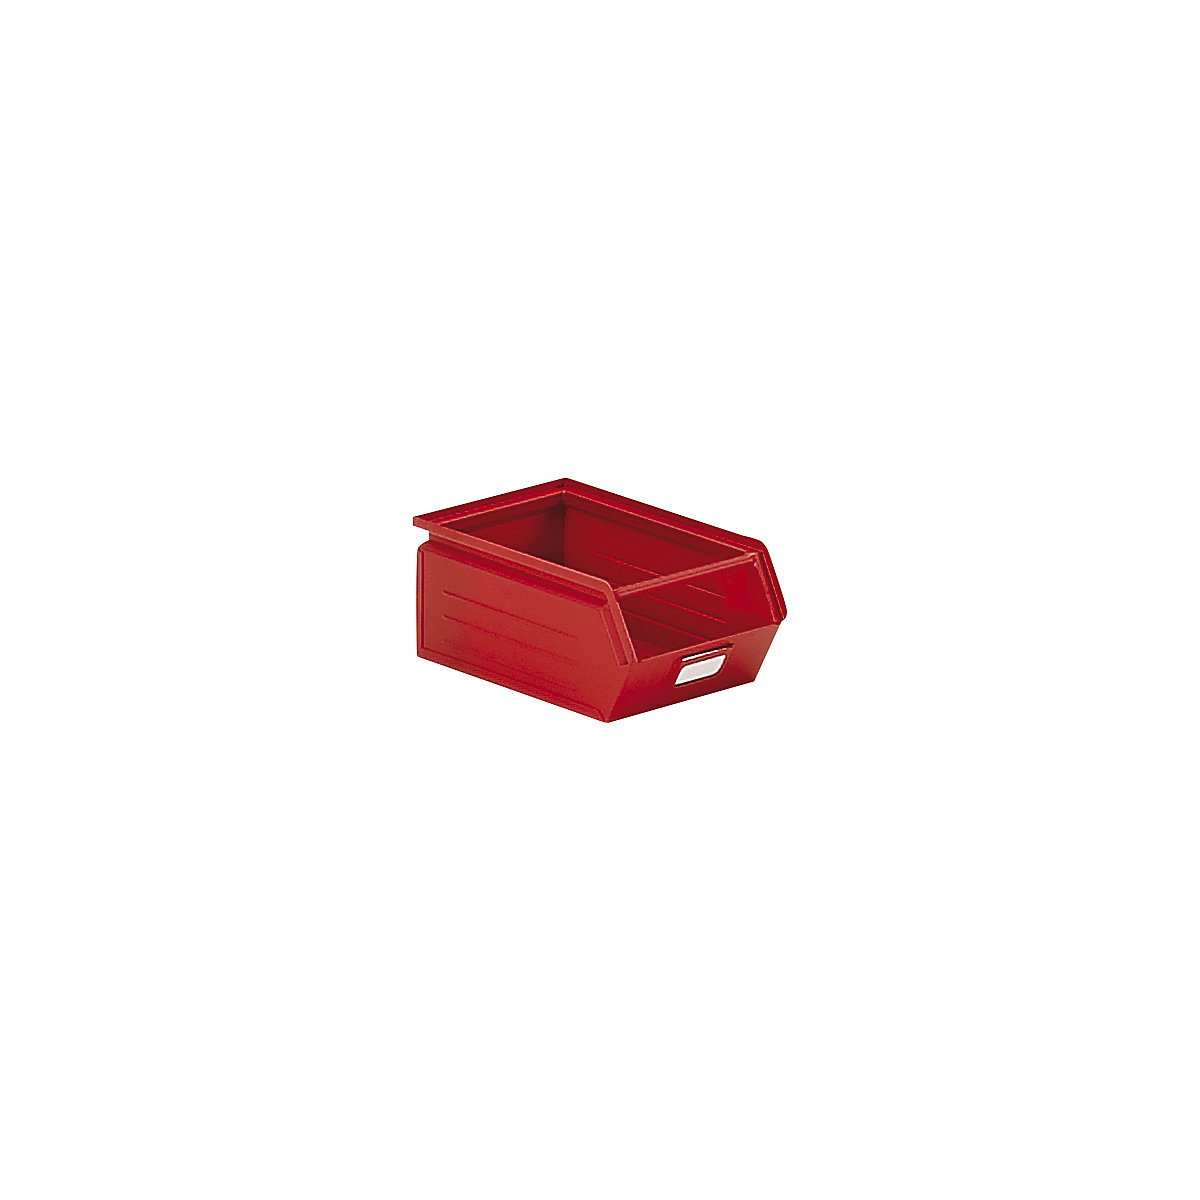 Cassettina per magazzinaggio in lamiera d'acciaio, lungh. x largh. x alt. 350 x 210 x 145 mm, con barra di trasporto, rosso fuoco-2